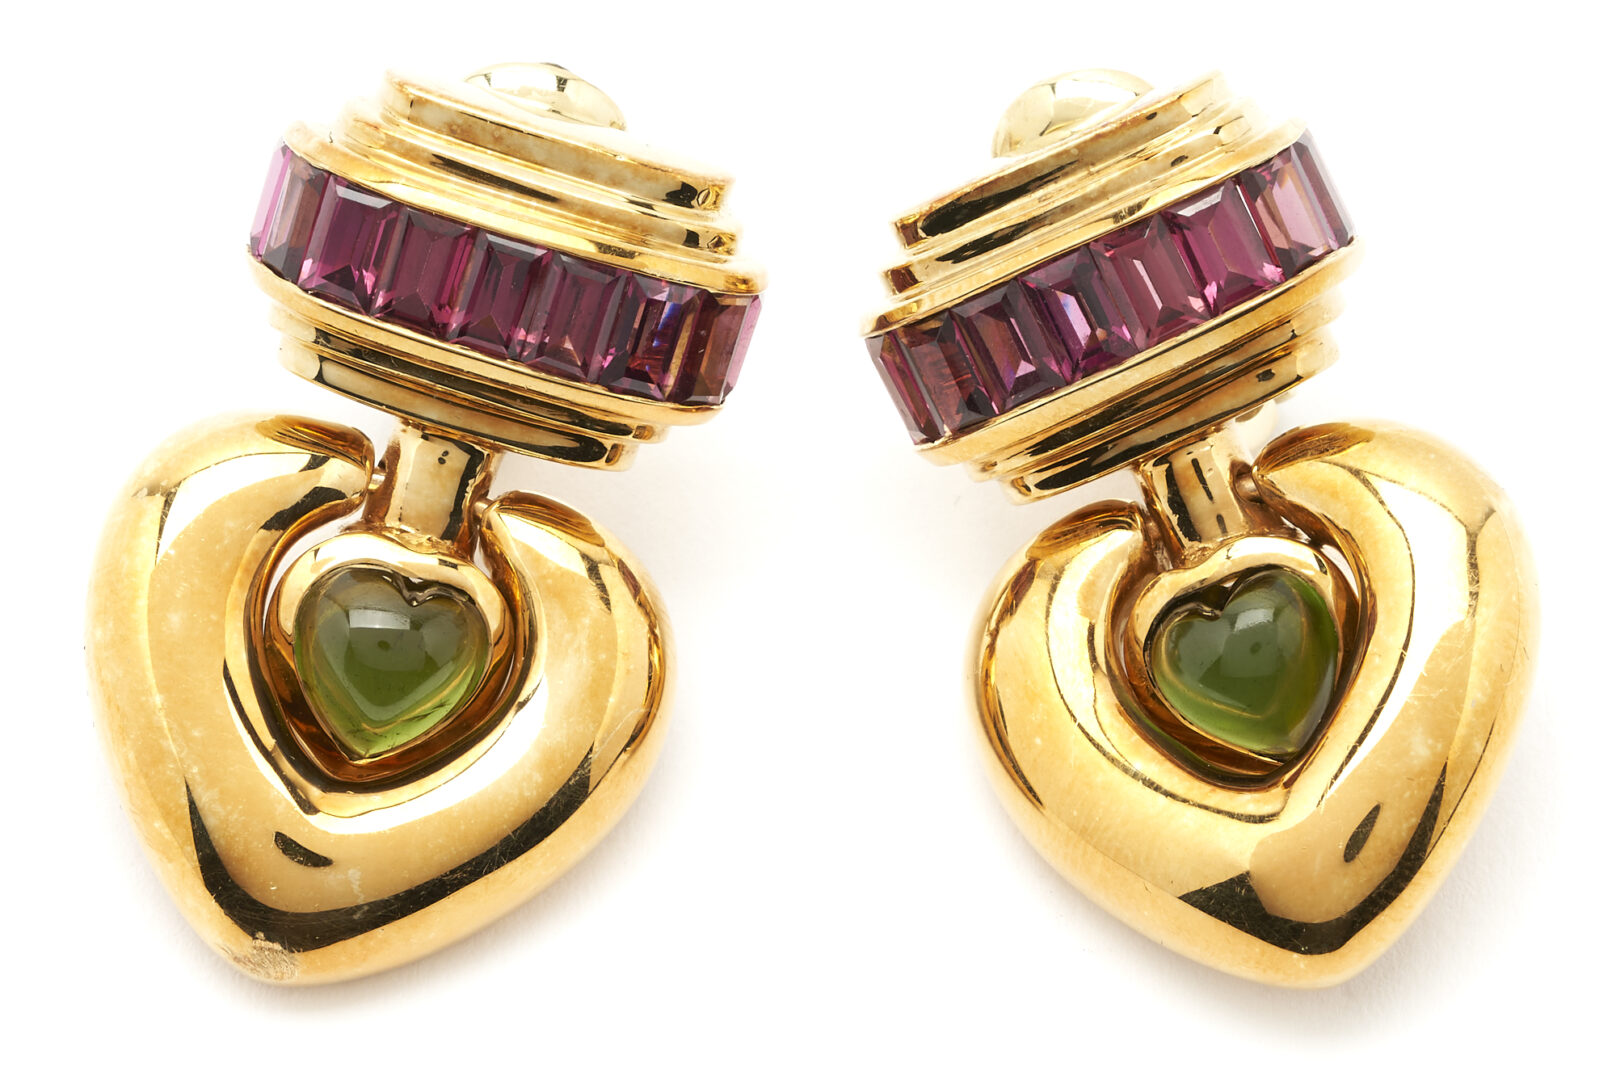 Lot 309: 18K Gold & Tourmaline Heart Earrings